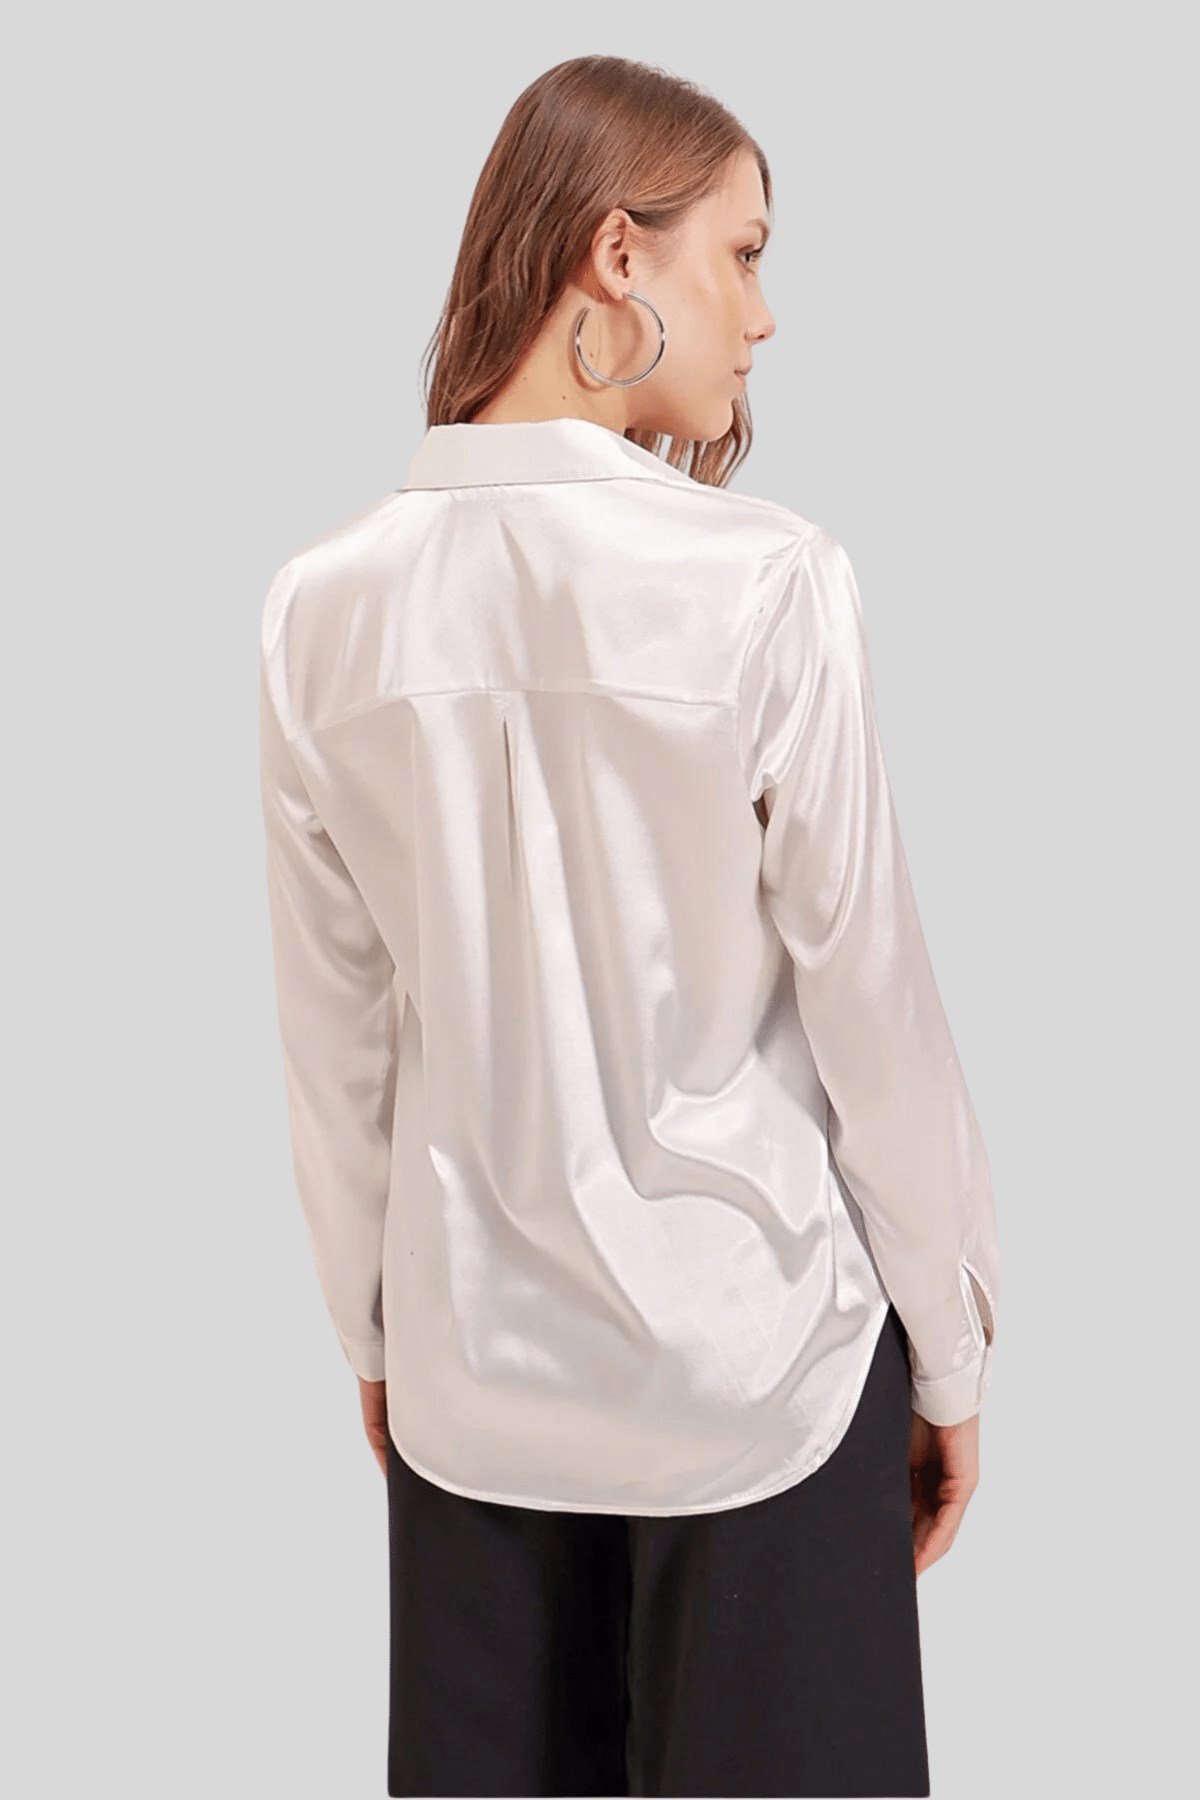 Kadın Beyaz Dökümlü Saten Gömlek - Butik Buruç